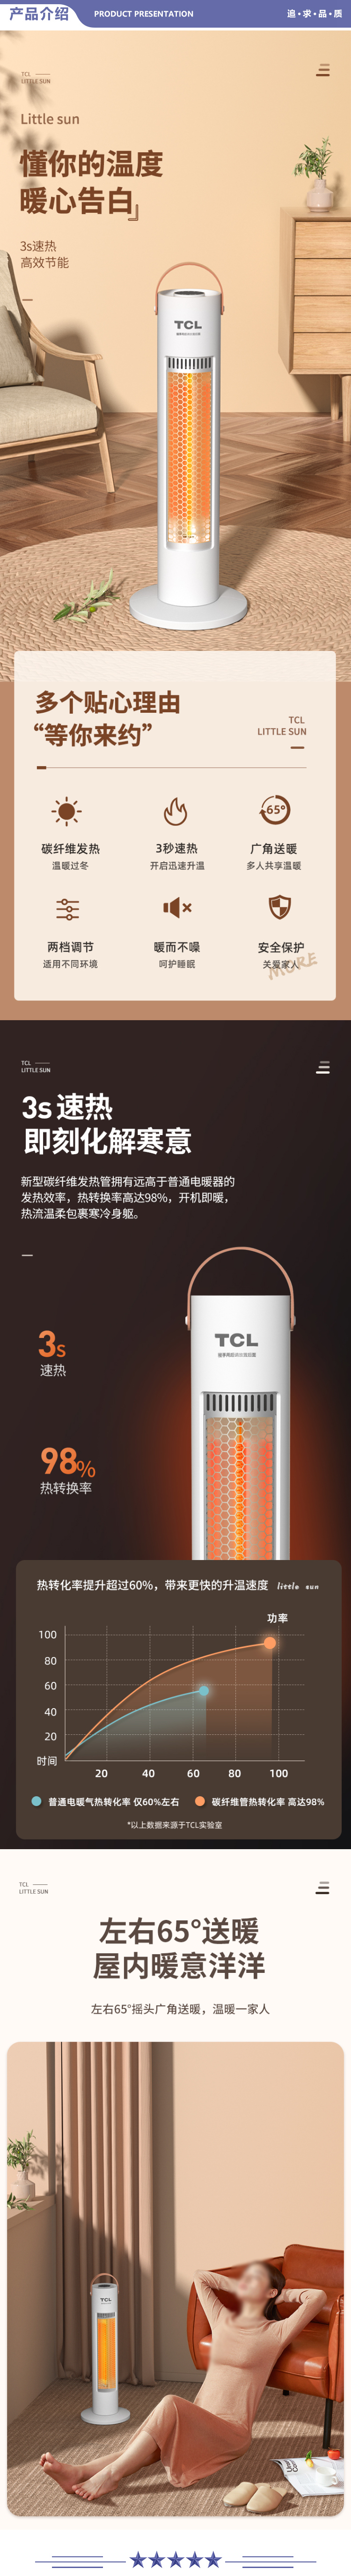 TCL TN21-S06C 取暖器小太阳家用取暖电器客厅烤火卧室塔式电暖器摇头办公室立式暖手暖脚电暖气白色 2.jpg